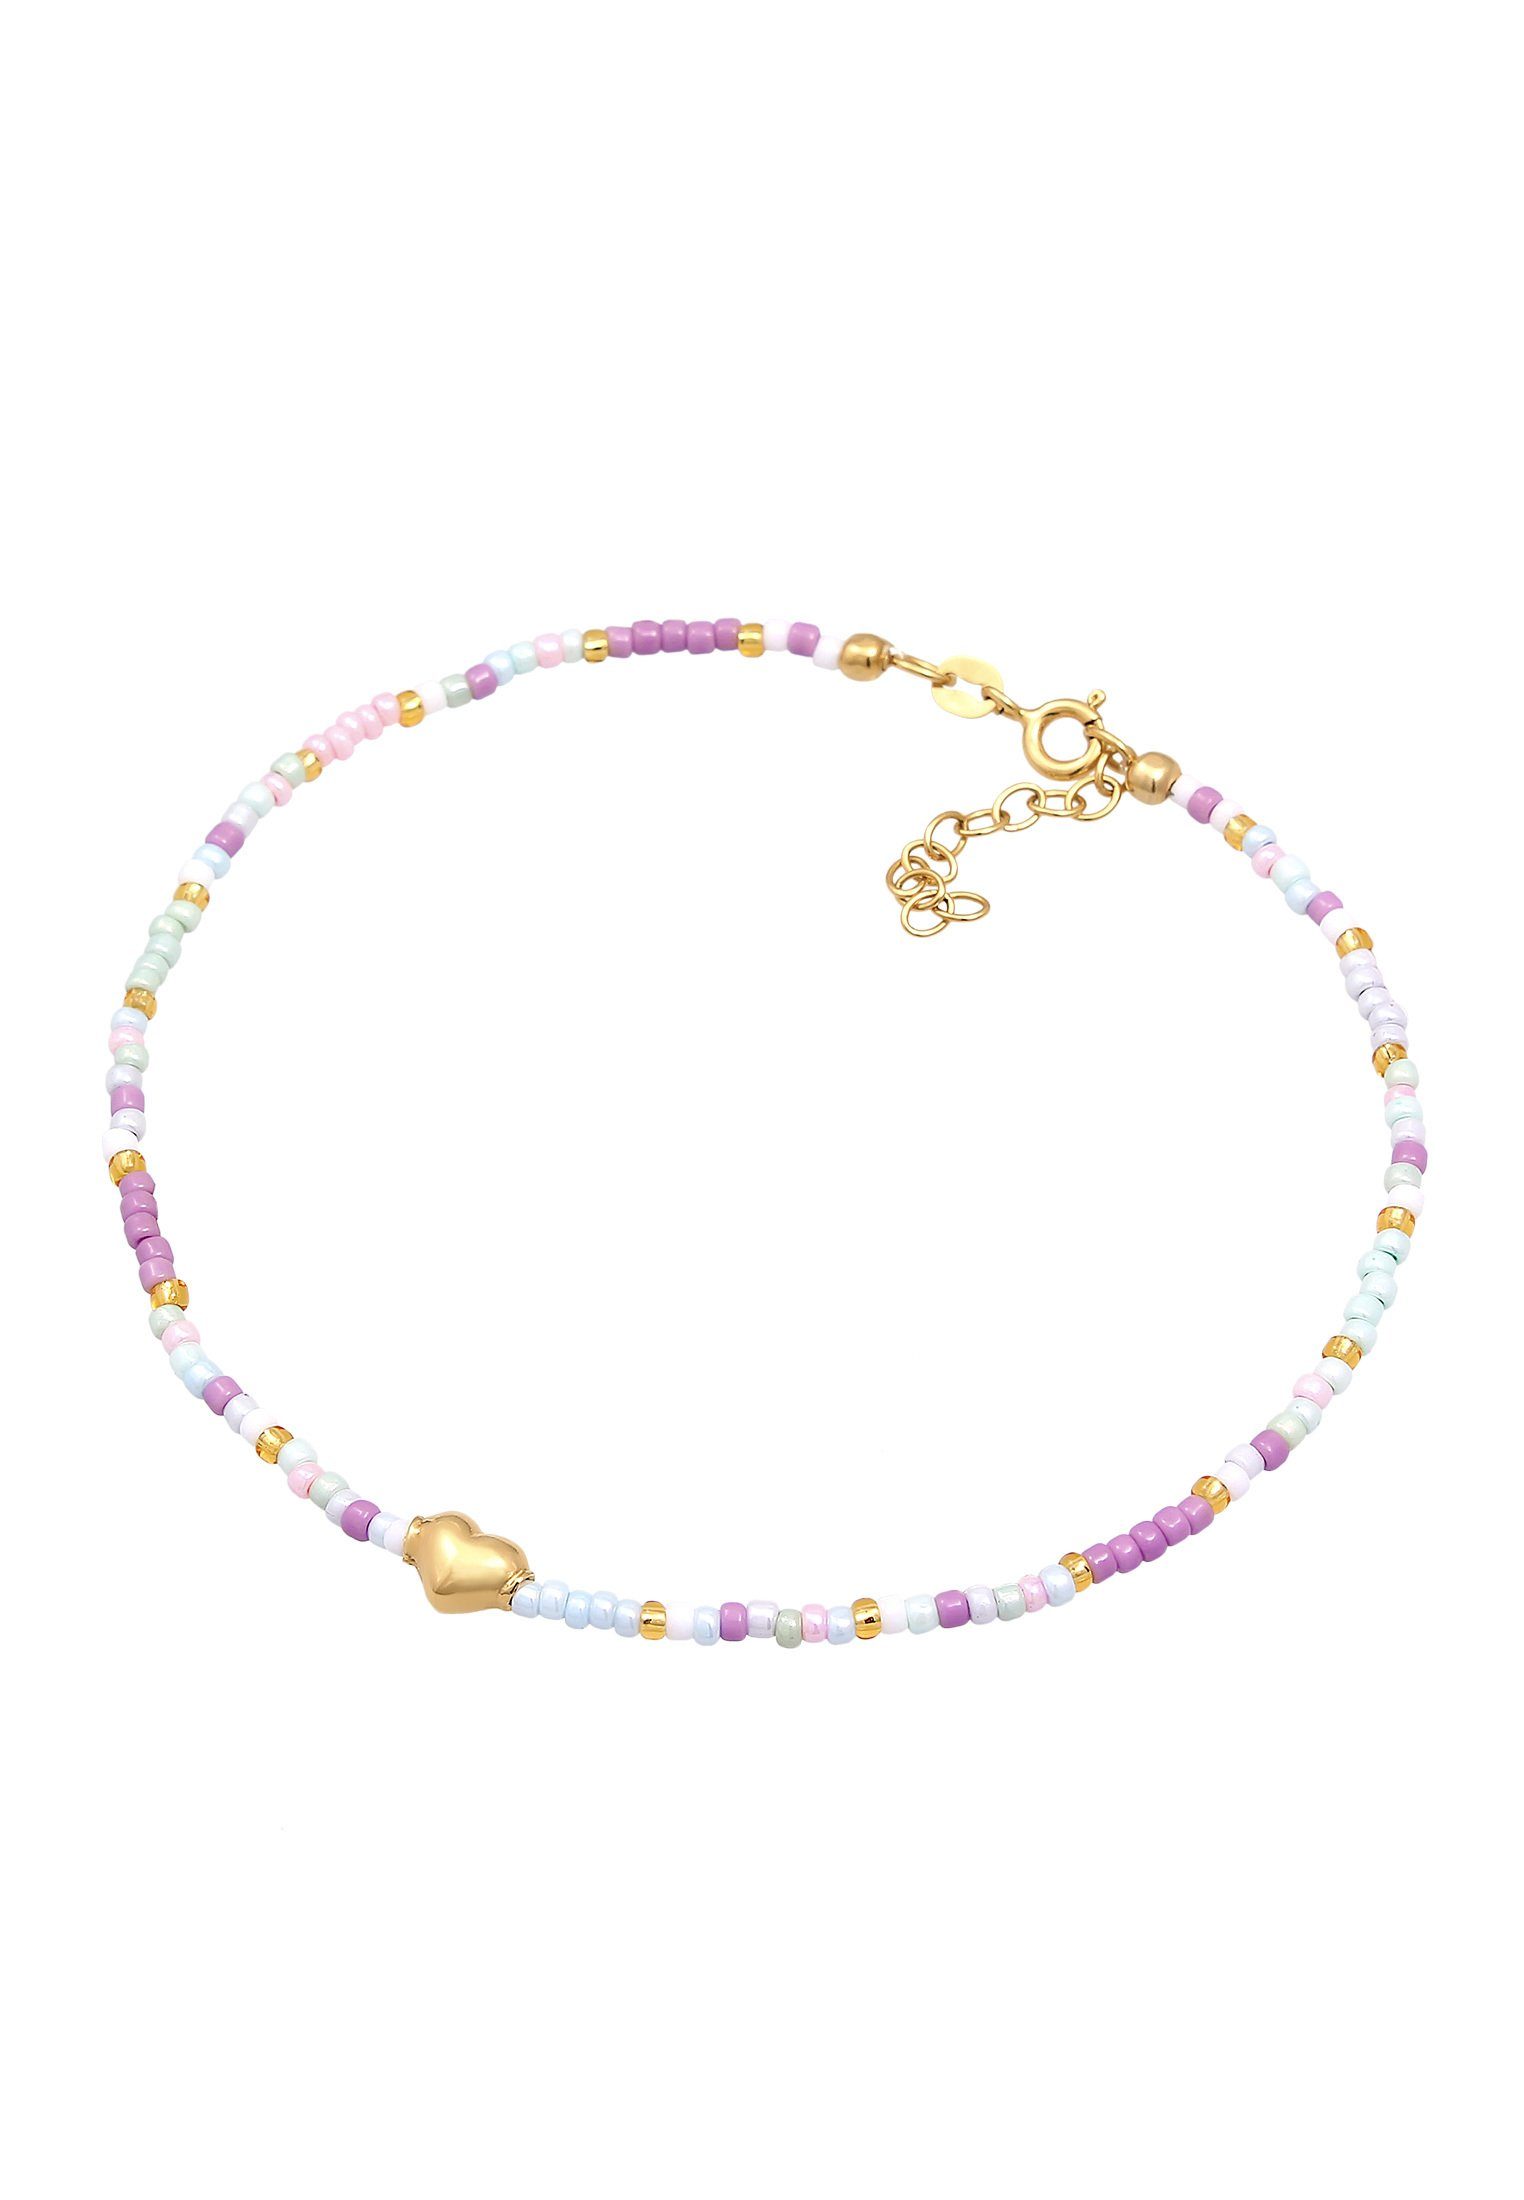 Elli Fußkette Herz Glas Beads Sommer Style 925 Silber vergoldet,  Geschmackvolle Glasperlen Fußkette für Damen | Fußkettchen